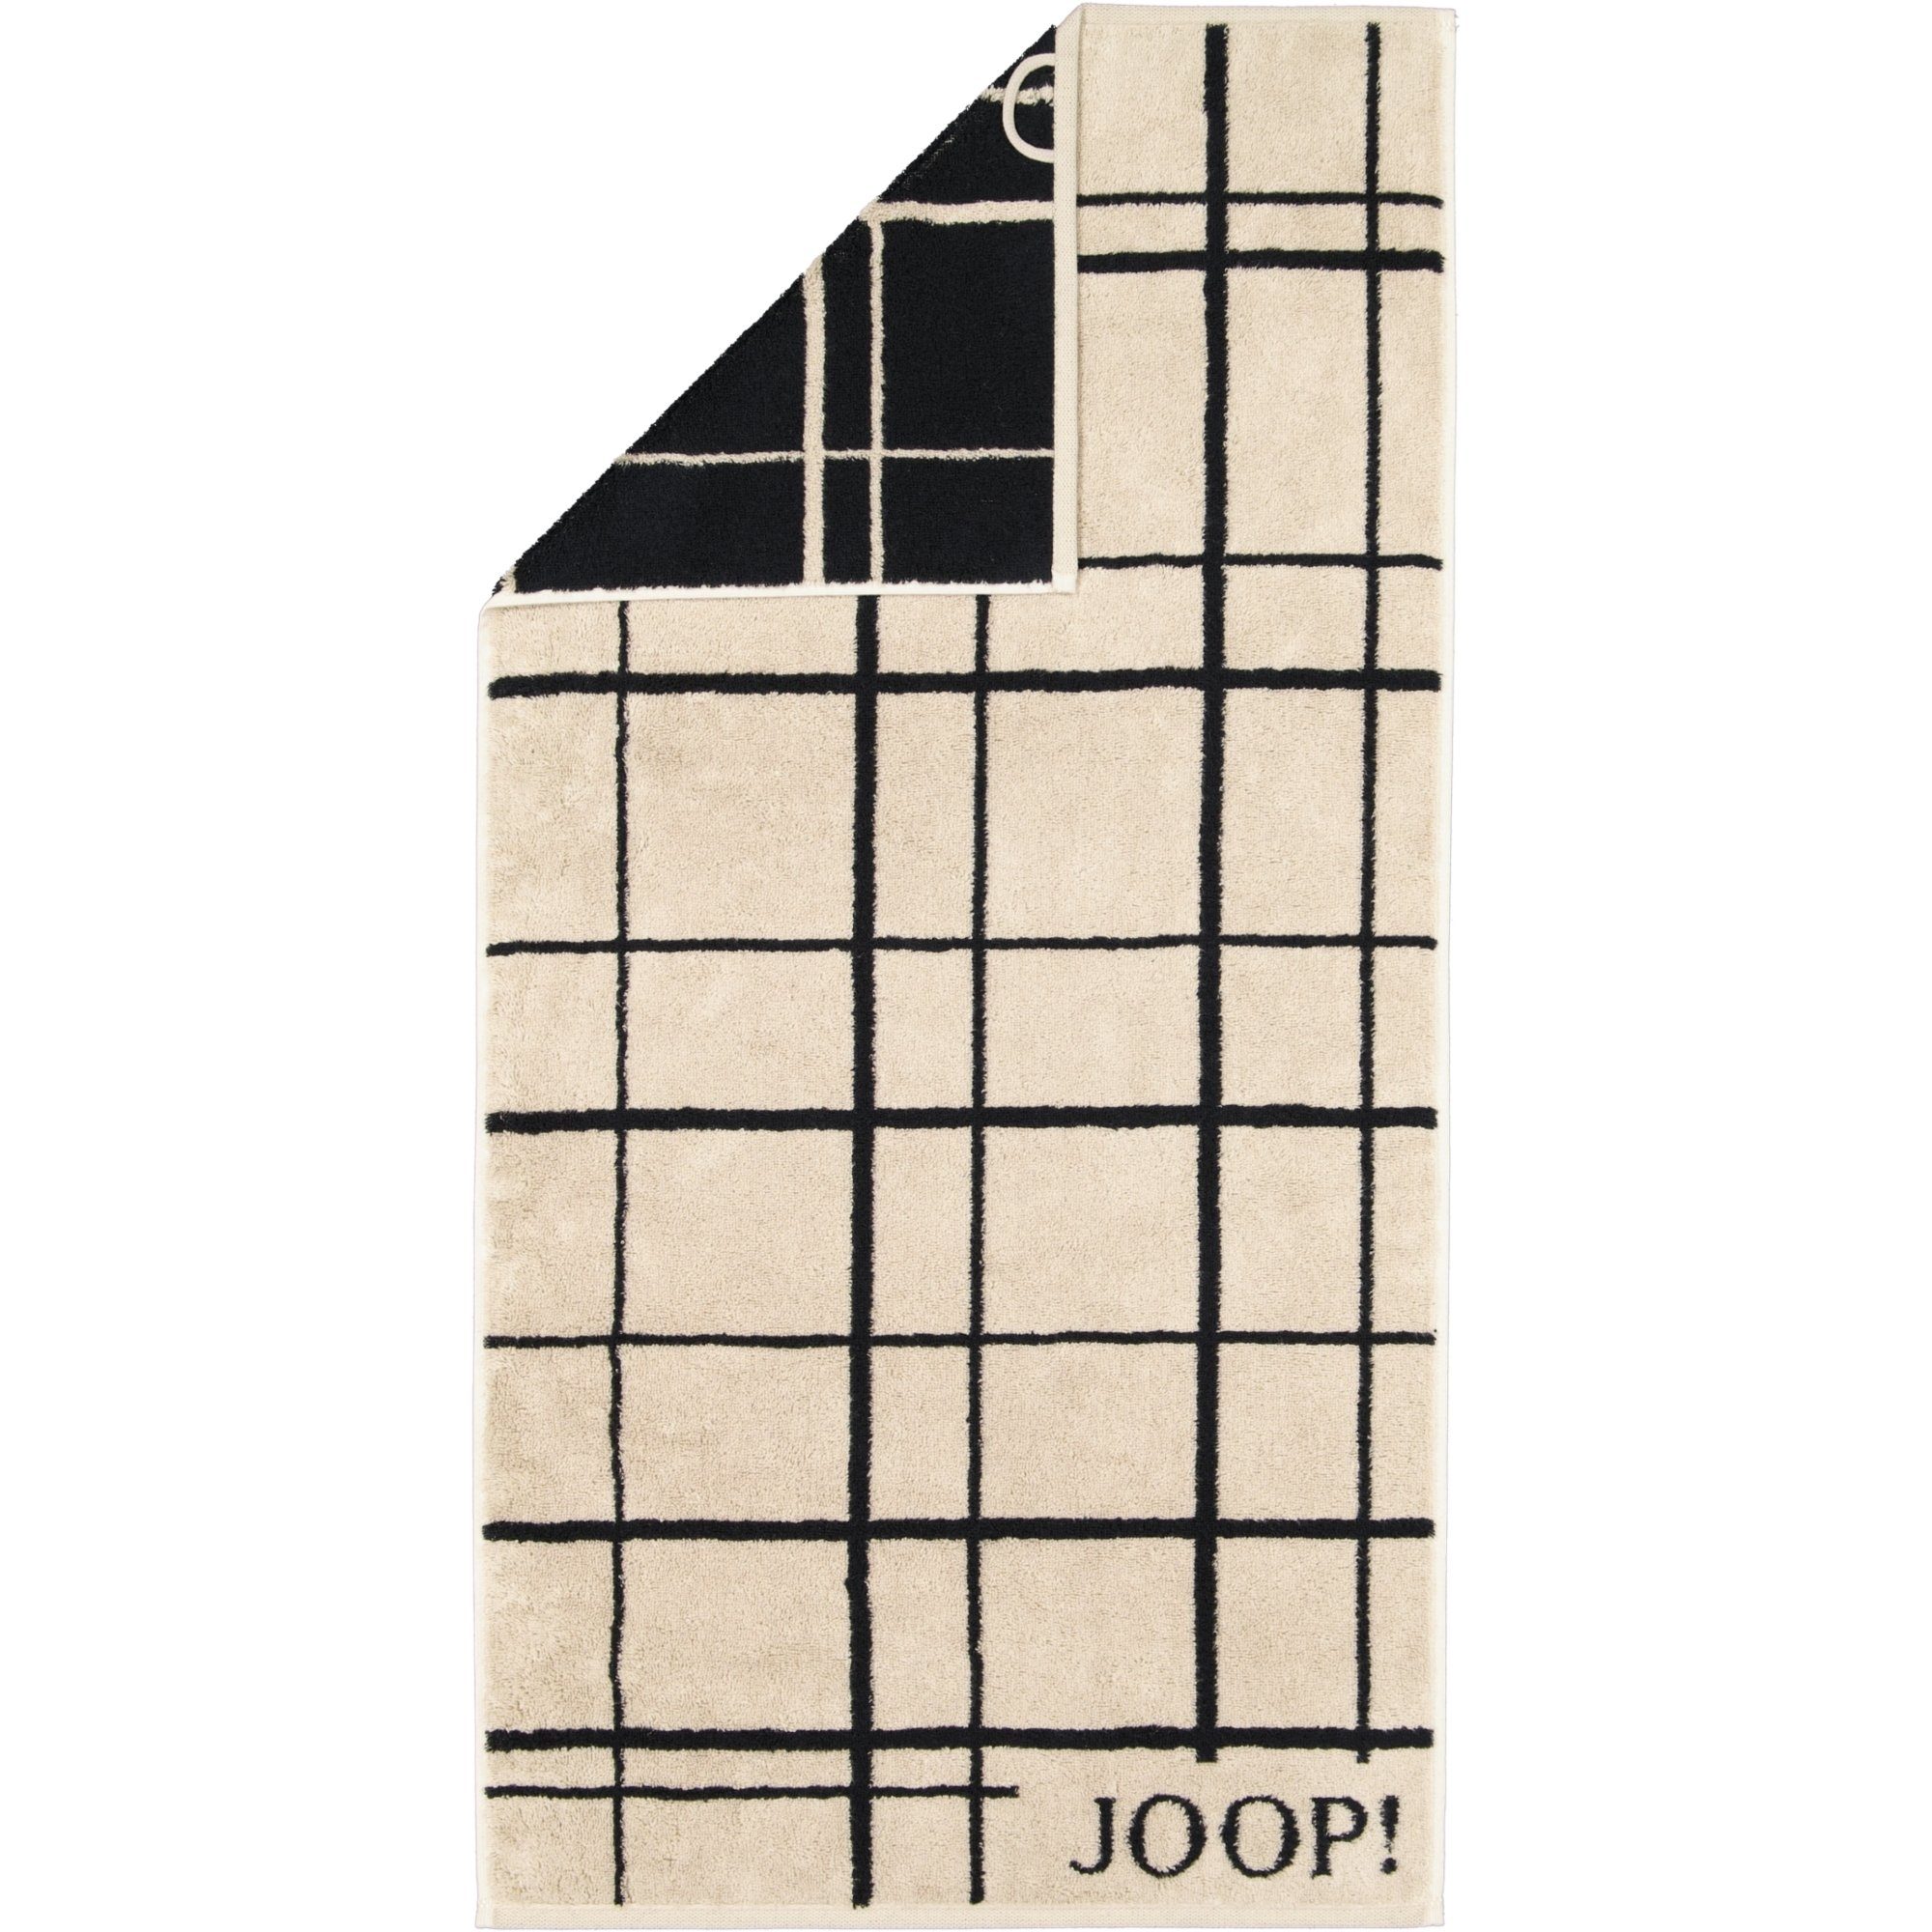 Handtücher 100% Select Joop! Layer 1696, Baumwolle